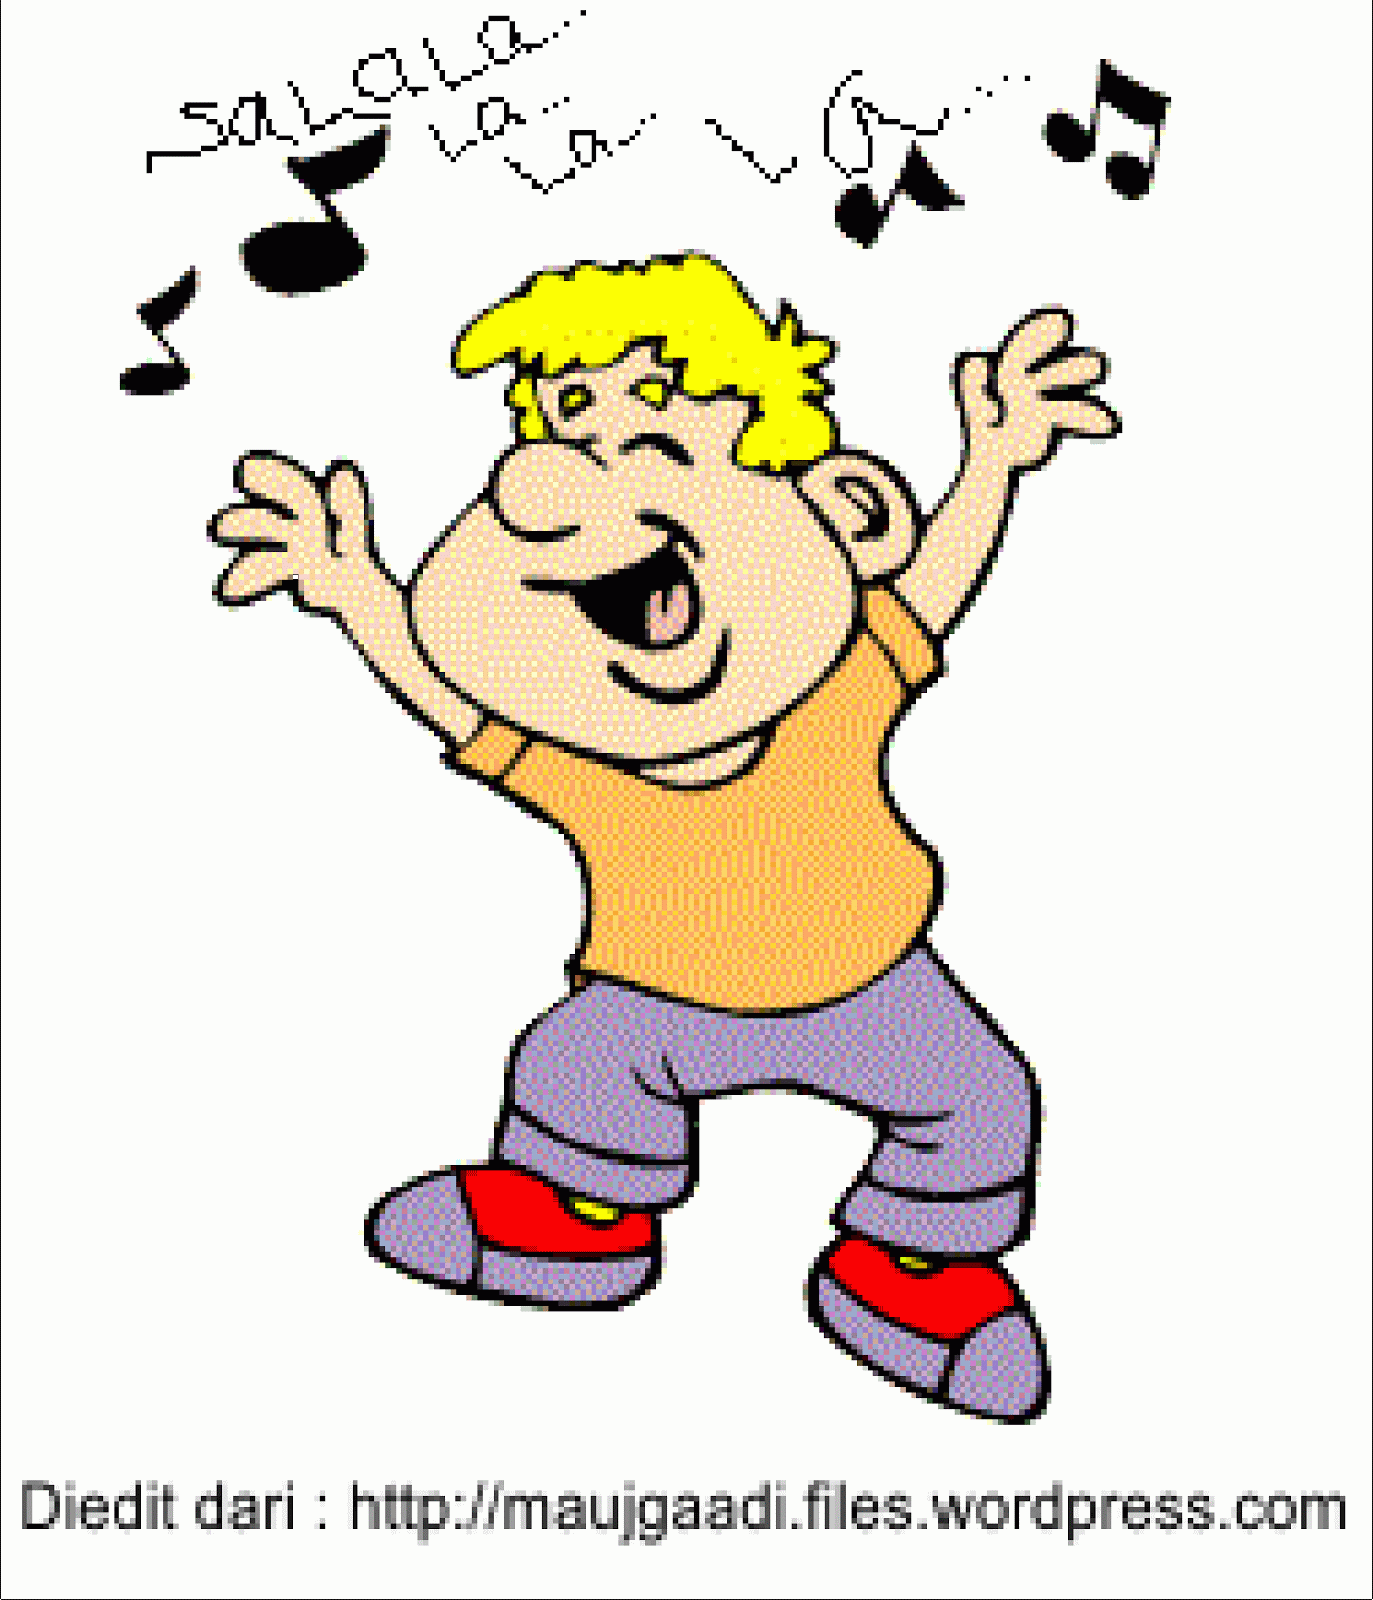 He likes to sing. Sing анимация. They are Dancing мультяшный. Гифки действия. I can Dance для дошкольников.